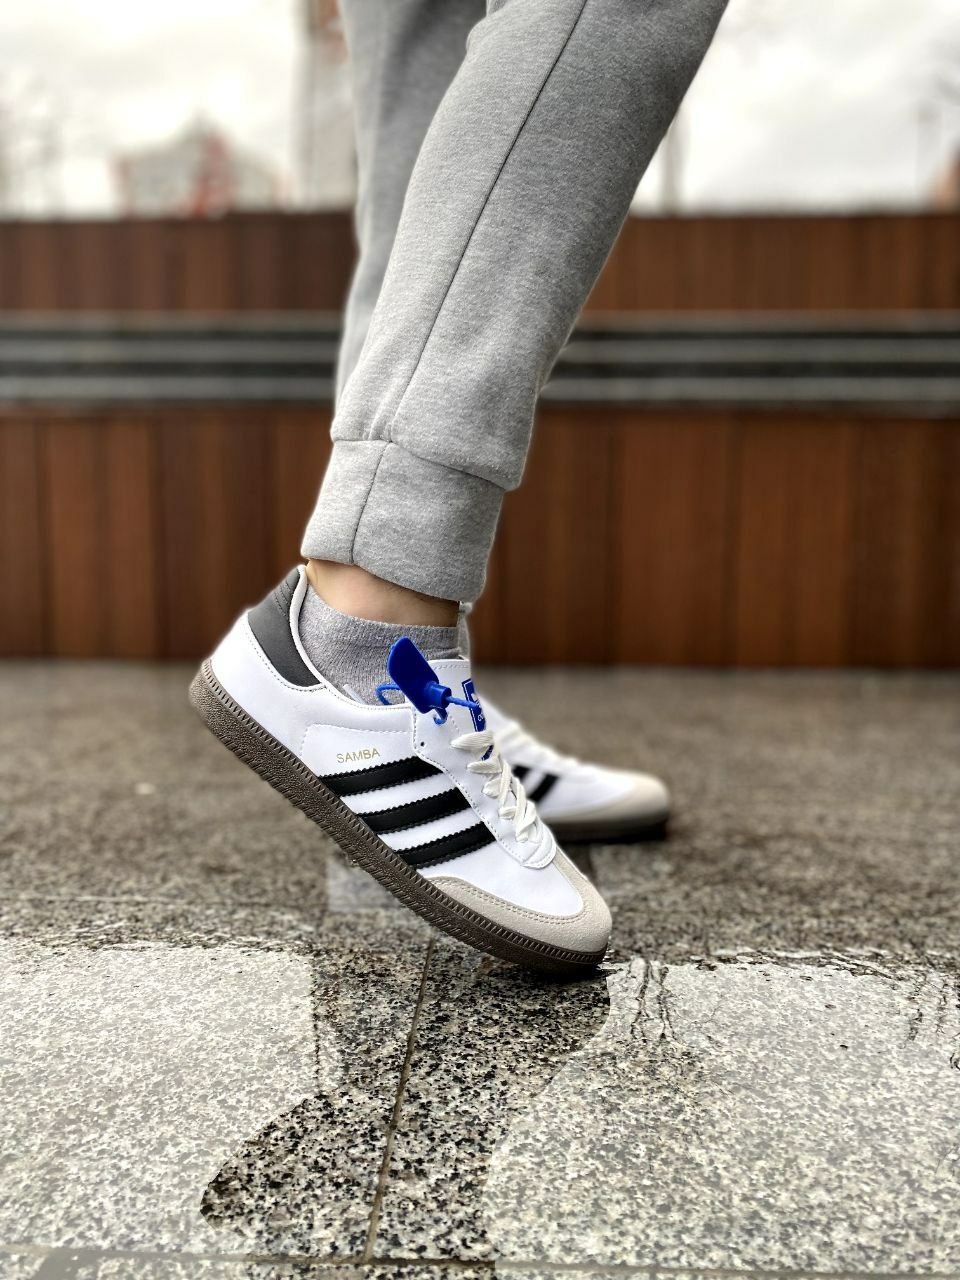 Adidas samba white&black/мужские кросссовки/чоловічі кросівки